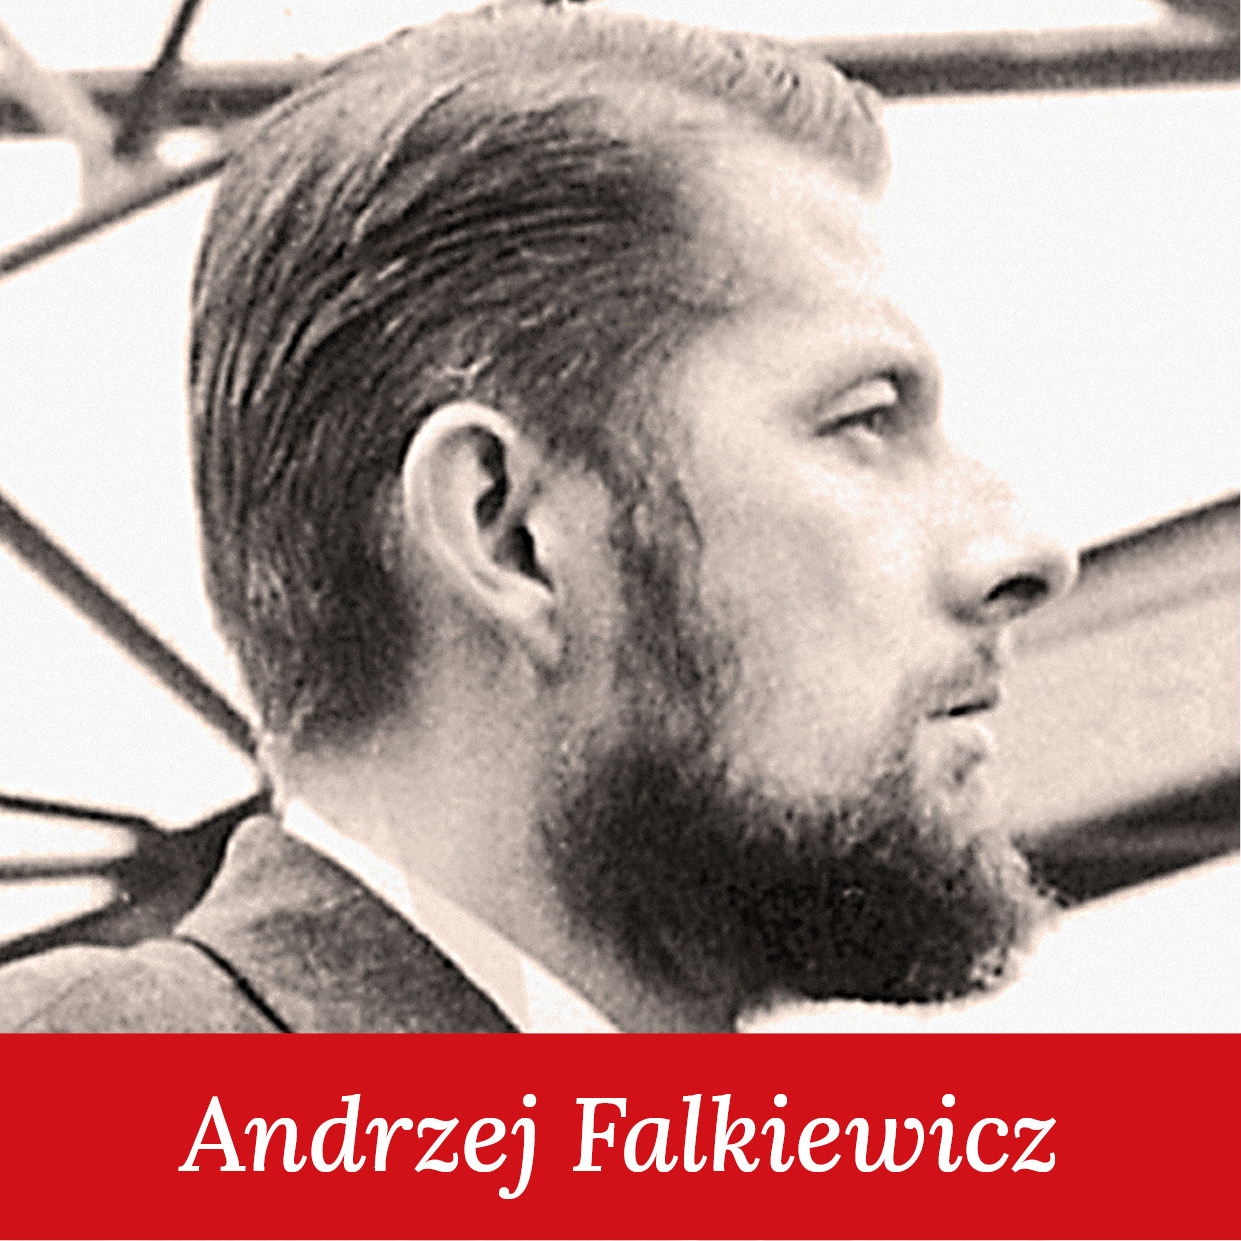 Andrzej Falkiewicz